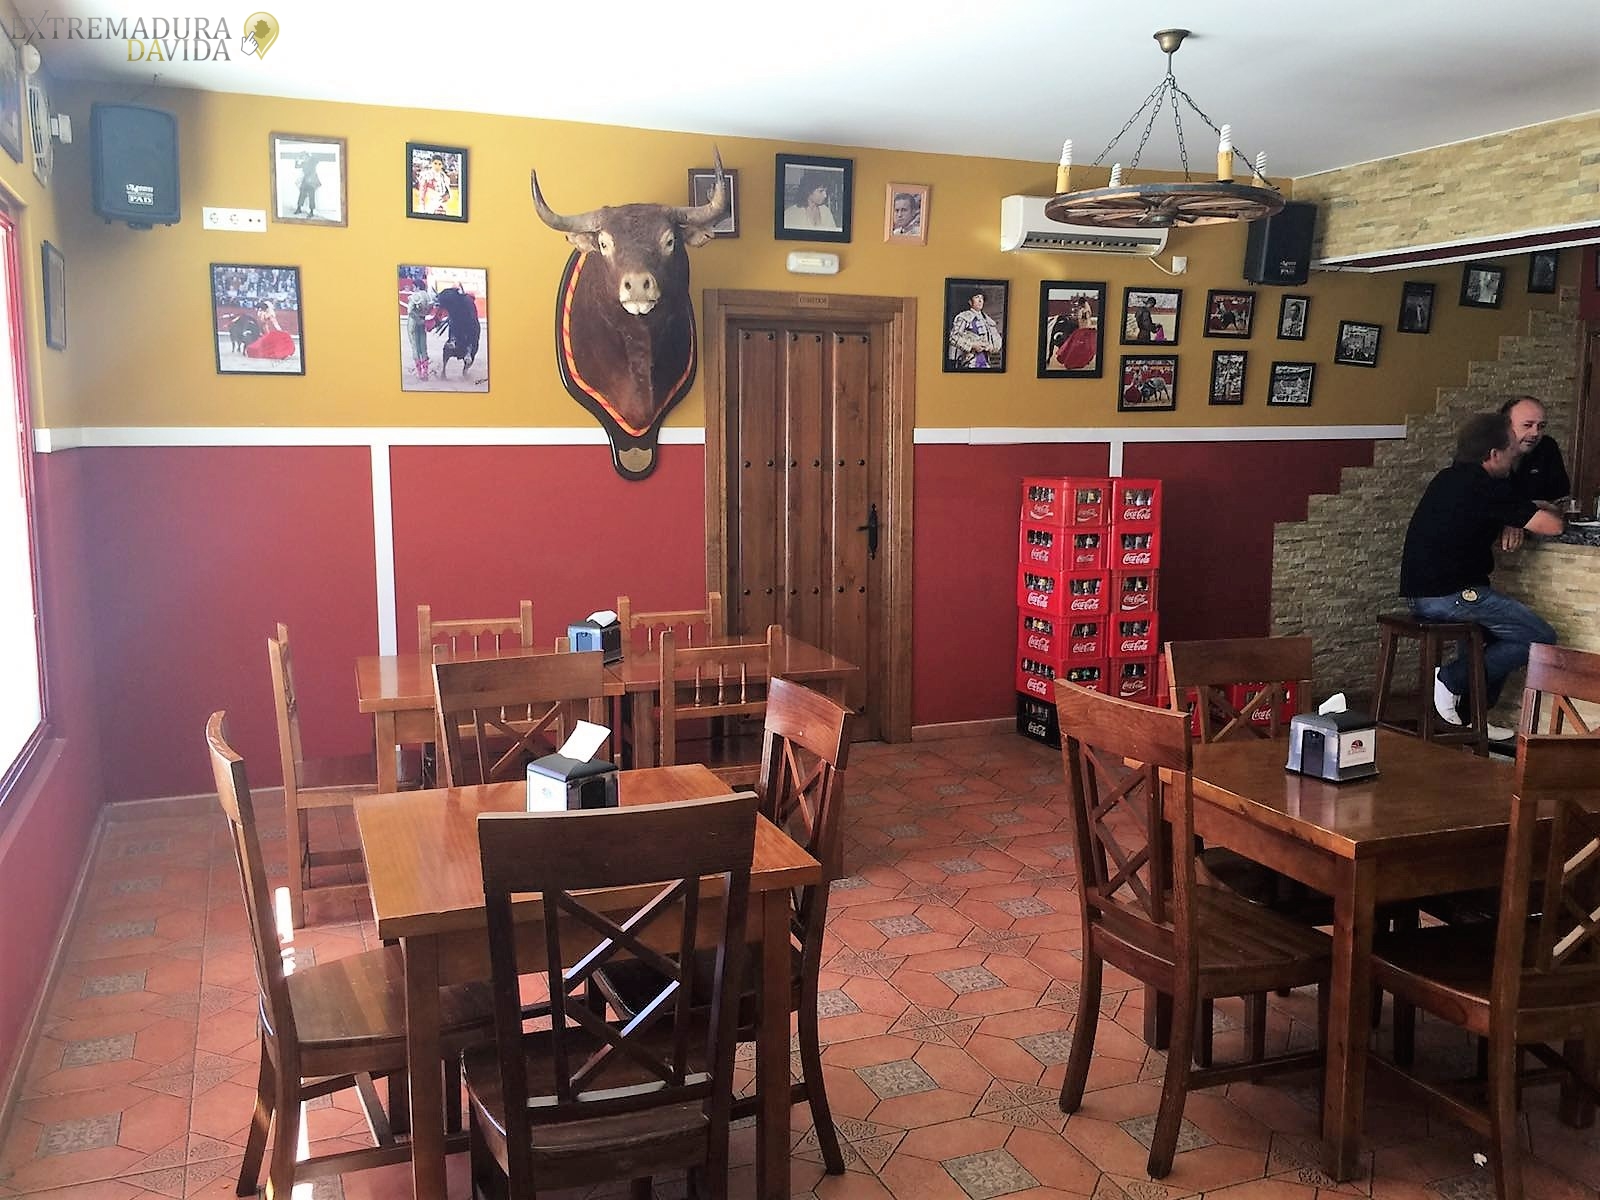 Mesón Restaurante en Navalmoral de la Mata El Burladero